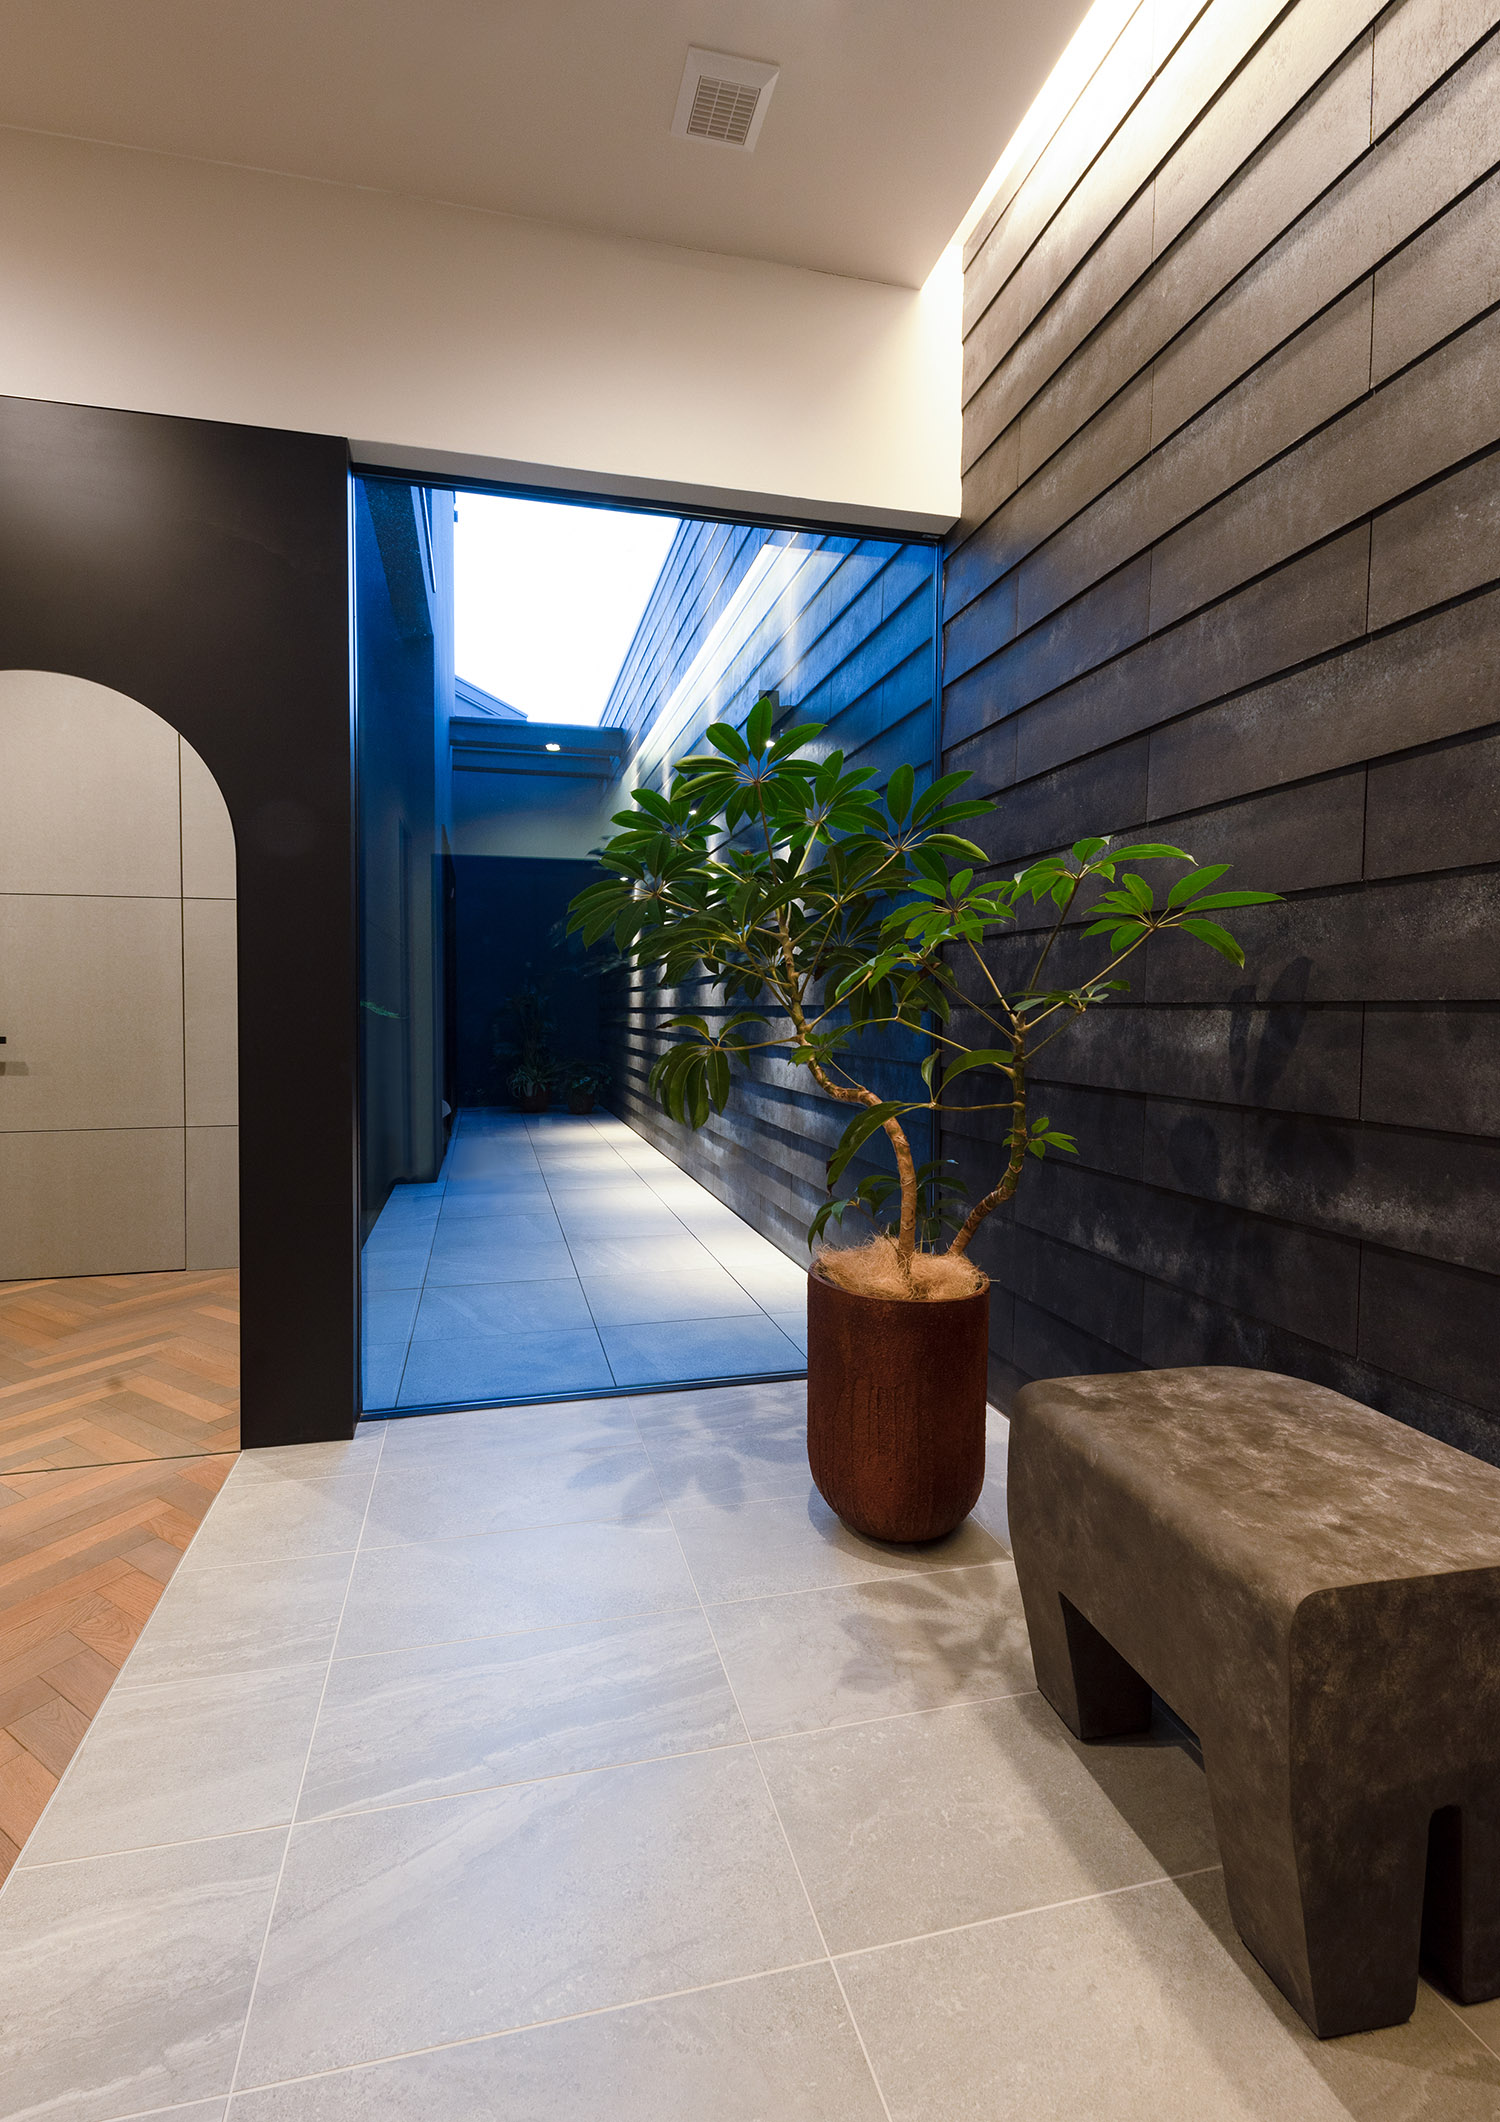 コンクリートのベンチや植栽がある、壁際に間接照明を取り付けたおしゃれな玄関・デザイン住宅